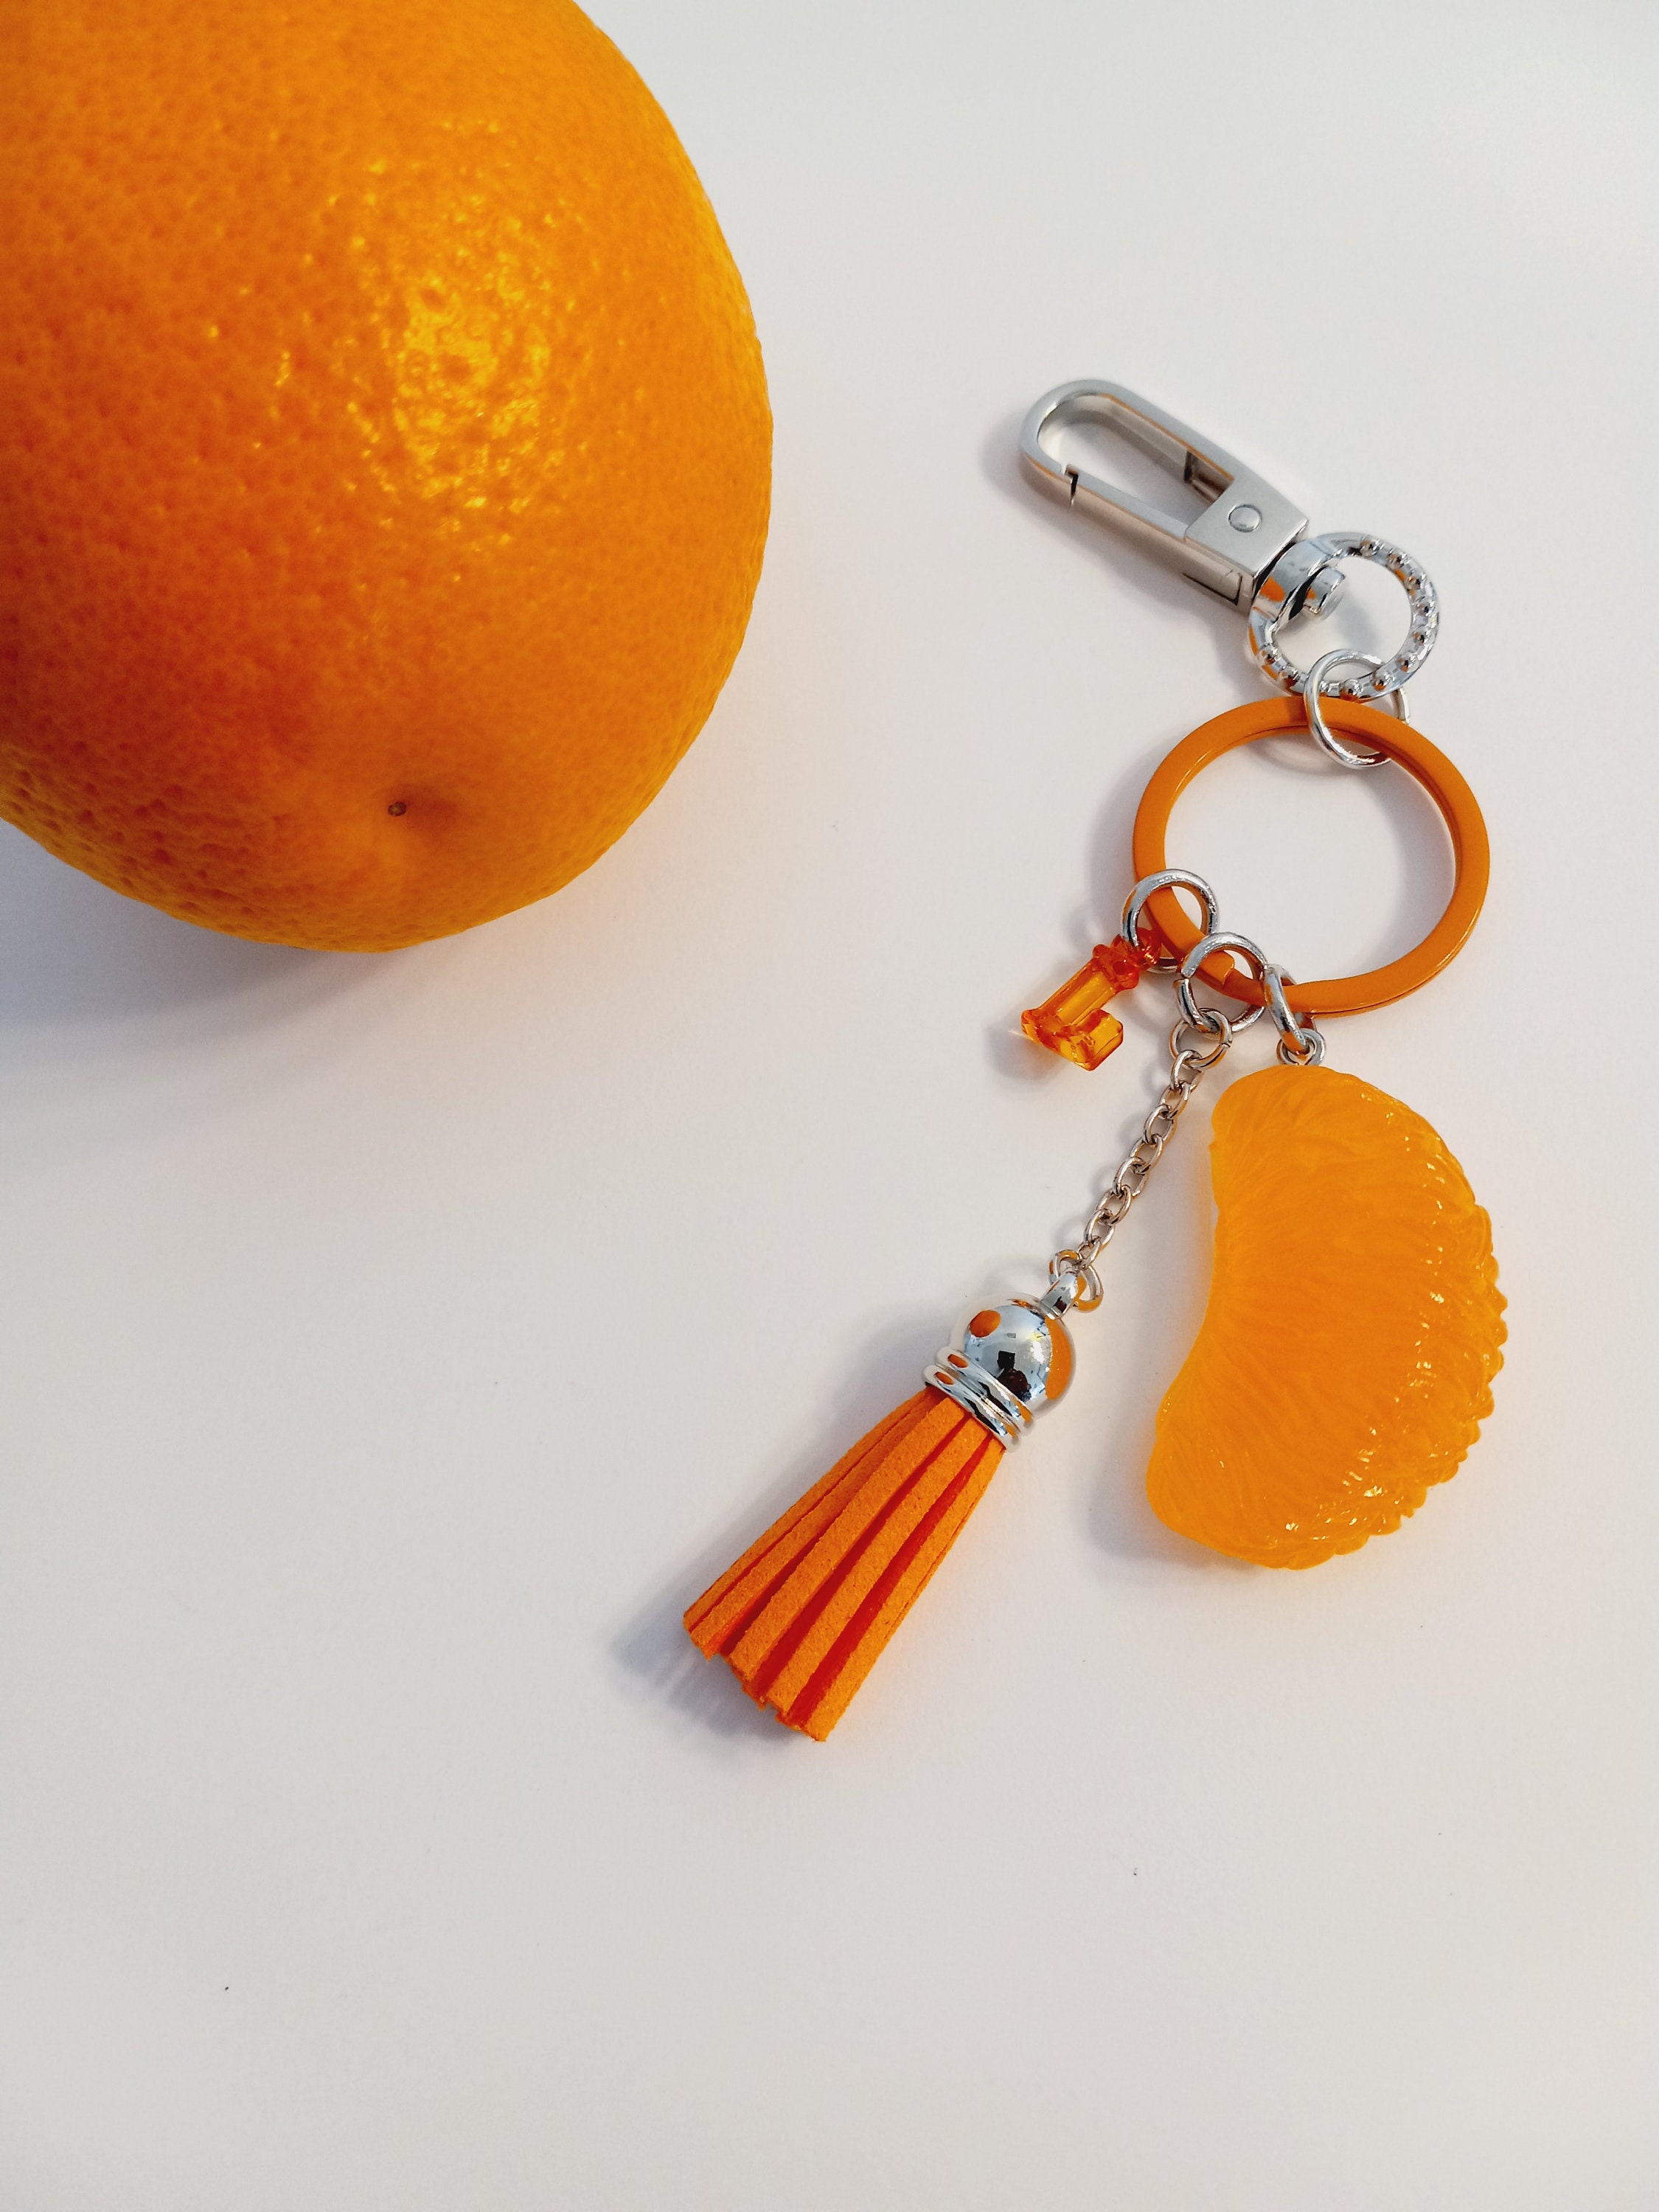 Fashion PU Leather Keychain Leather Strawberry Orange Fruits Key